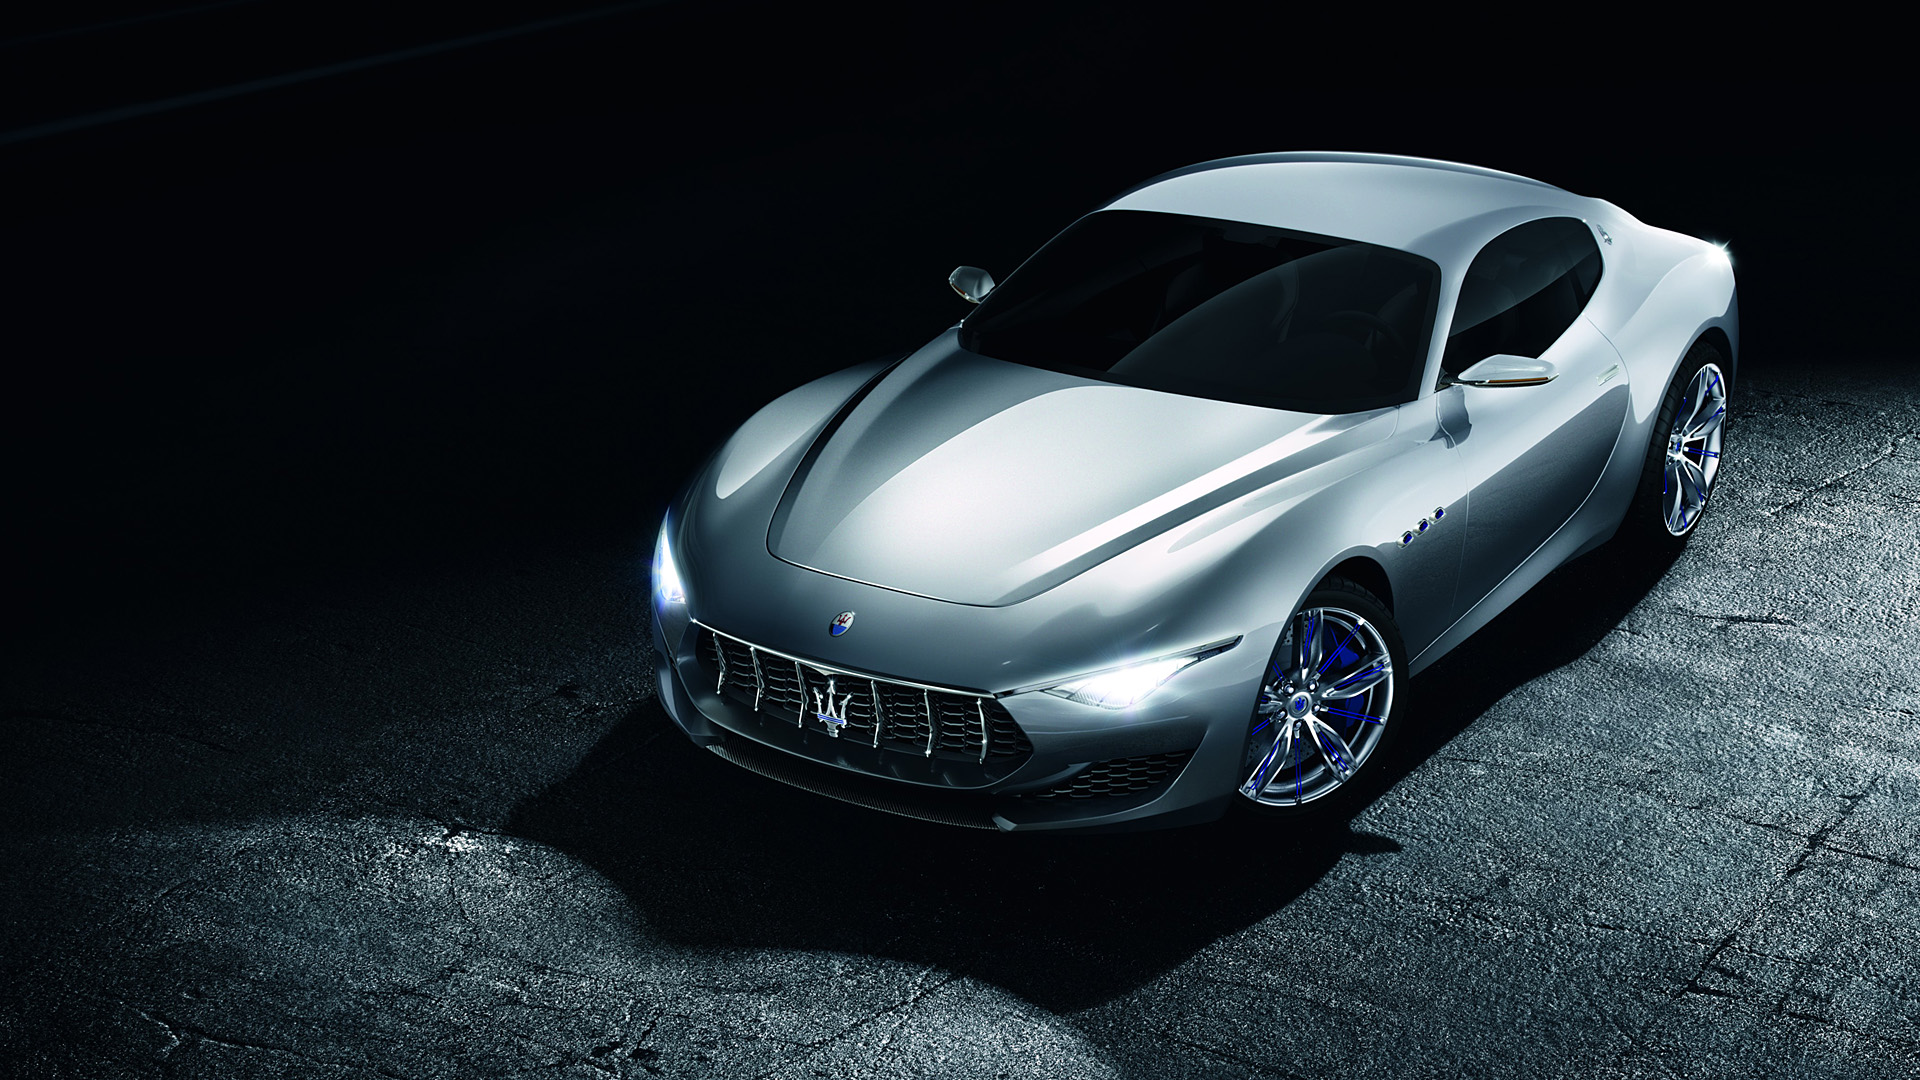  2014 Maserati Alfieri Concept Wallpaper.